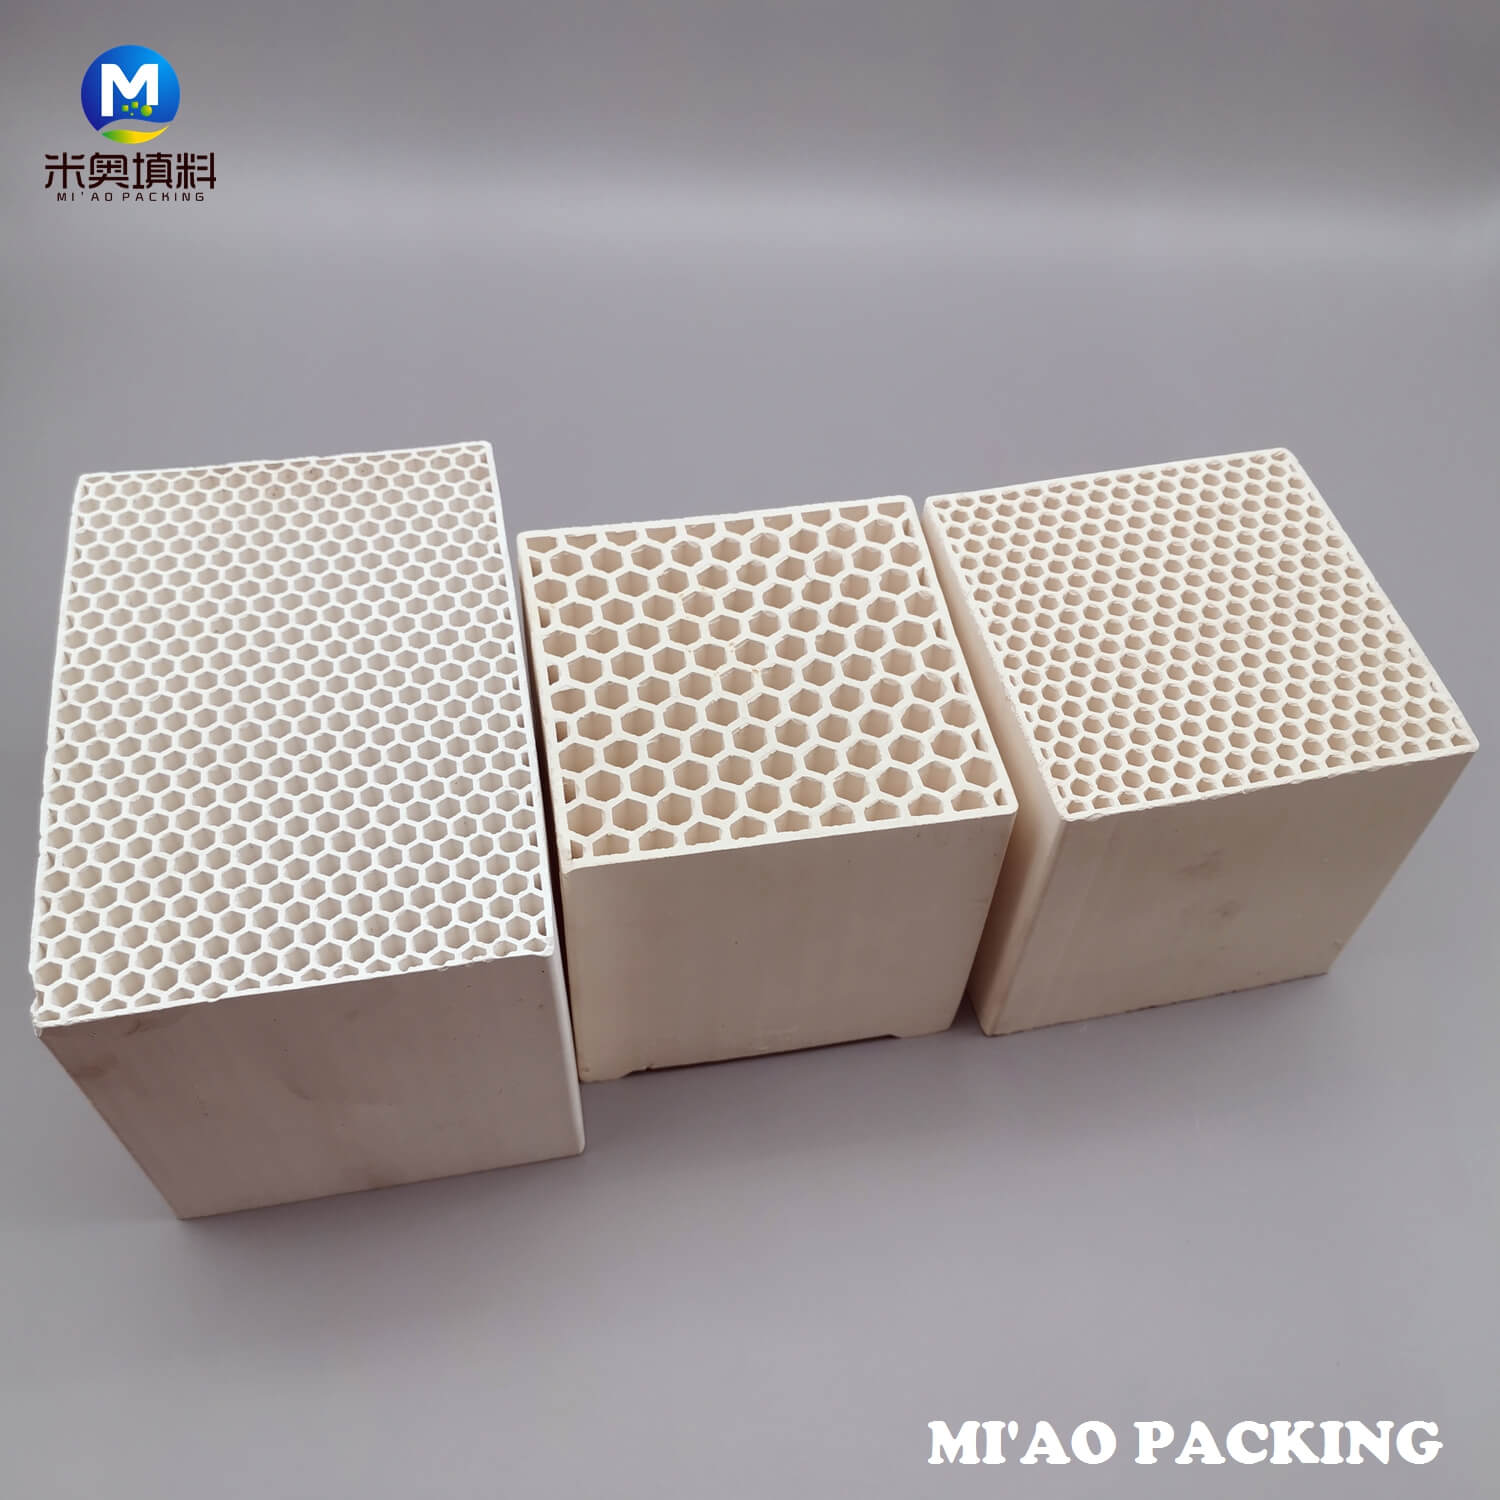 Honeycomb Ceramic Block